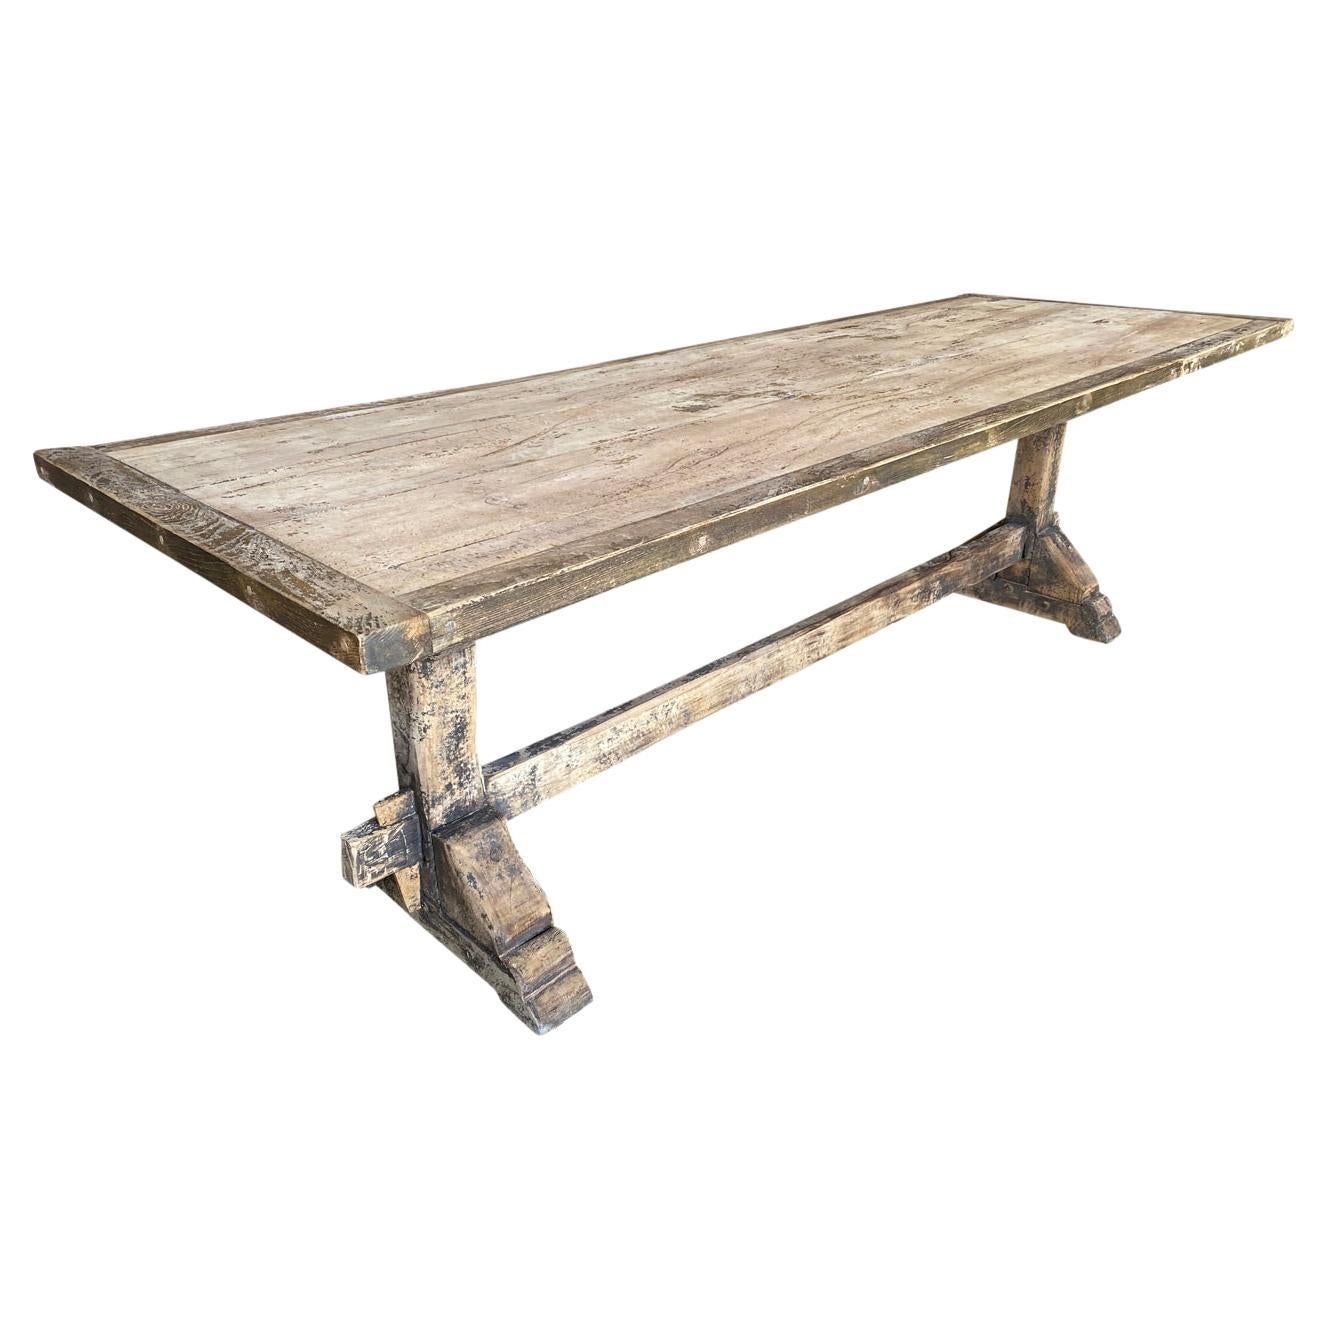 Table de ferme primitive française du 19ème siècle - Table à tréteaux